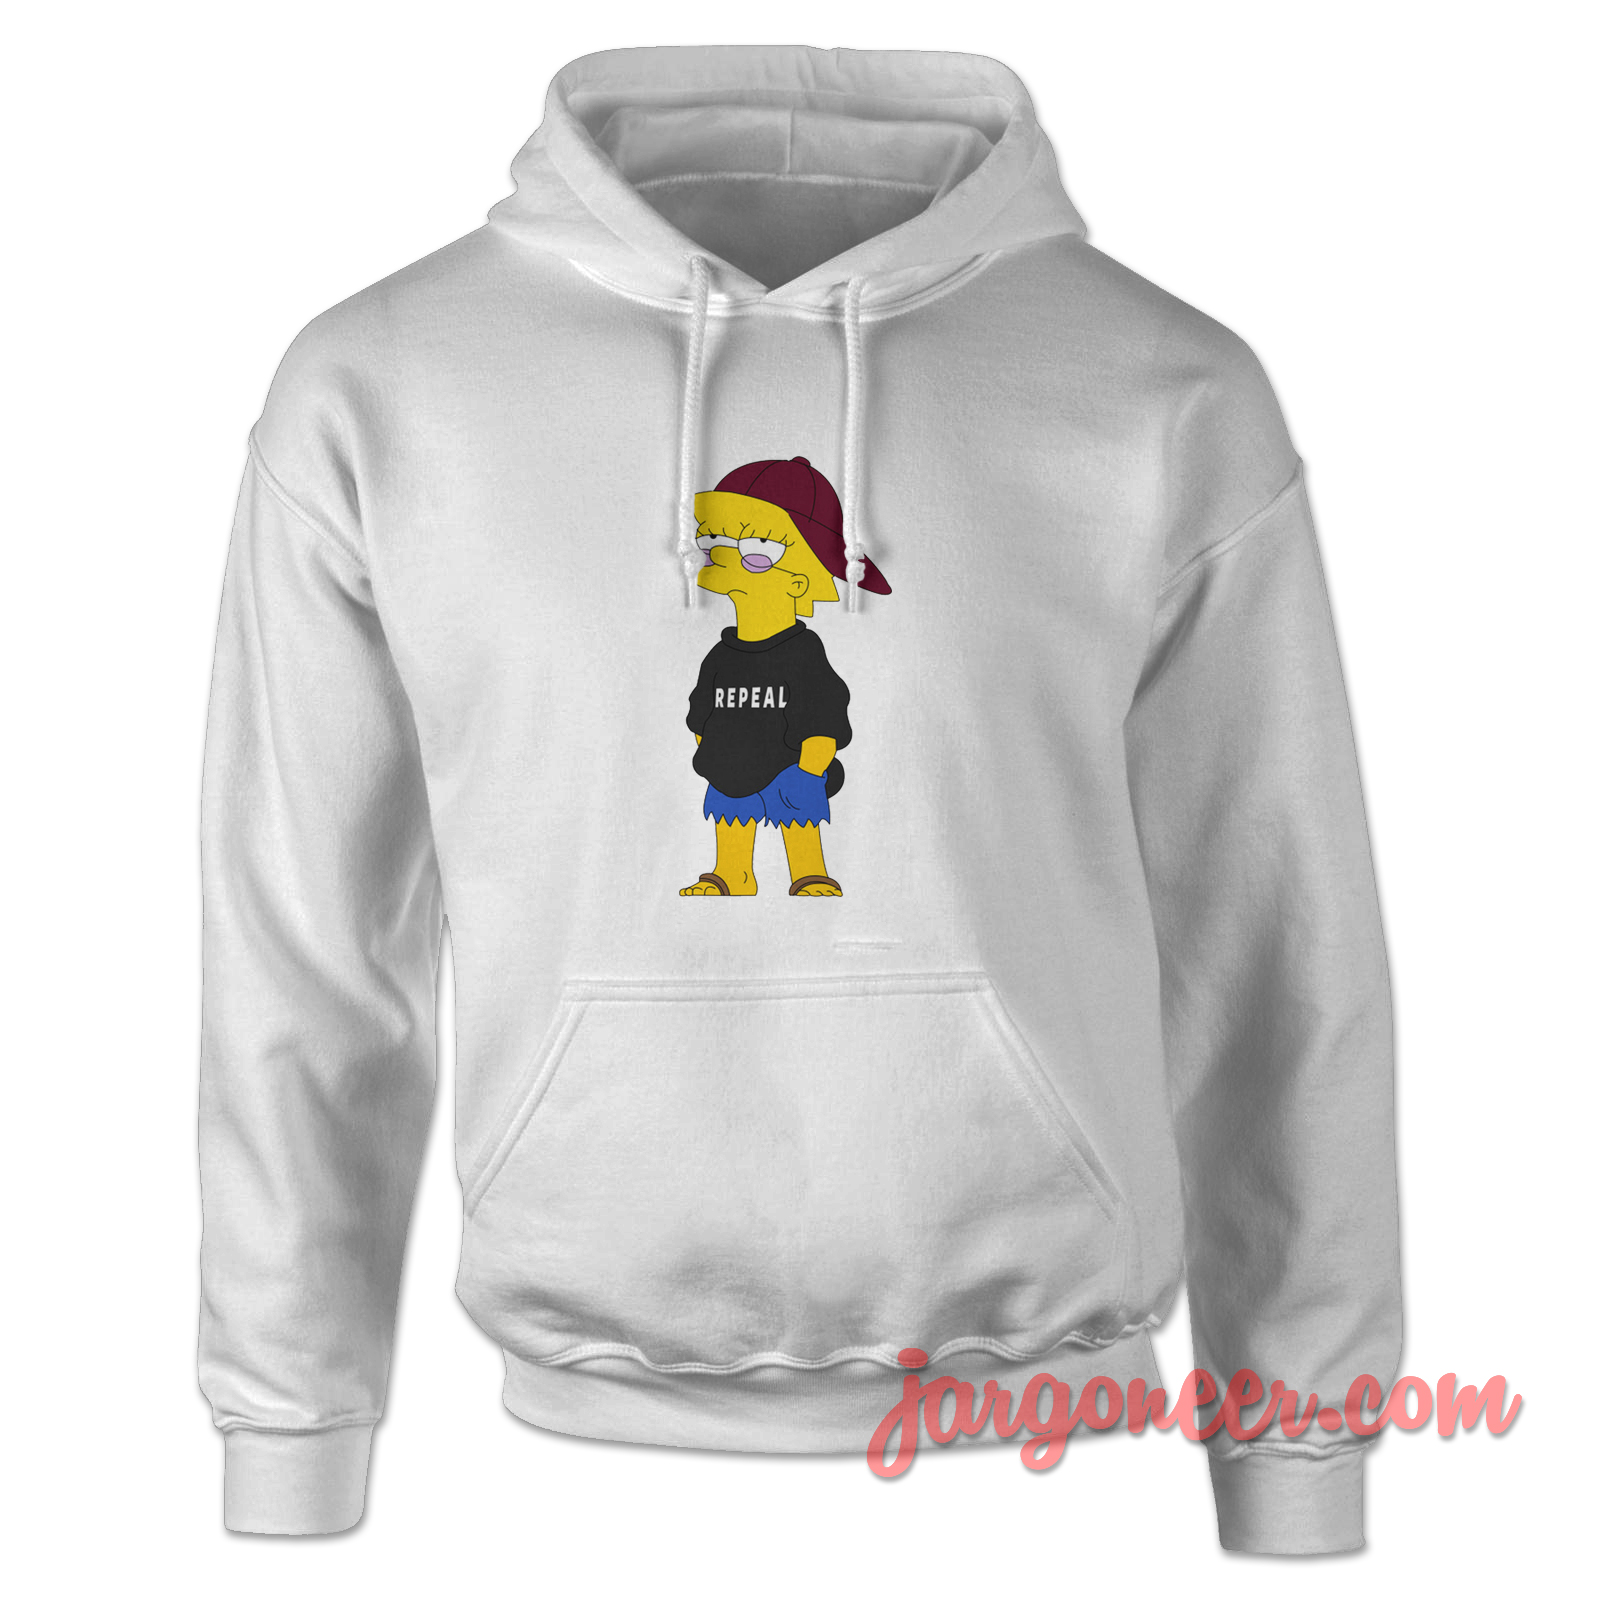 Repeal Jumper Homer - Shop Unique Graphic Cool Shirt Designs